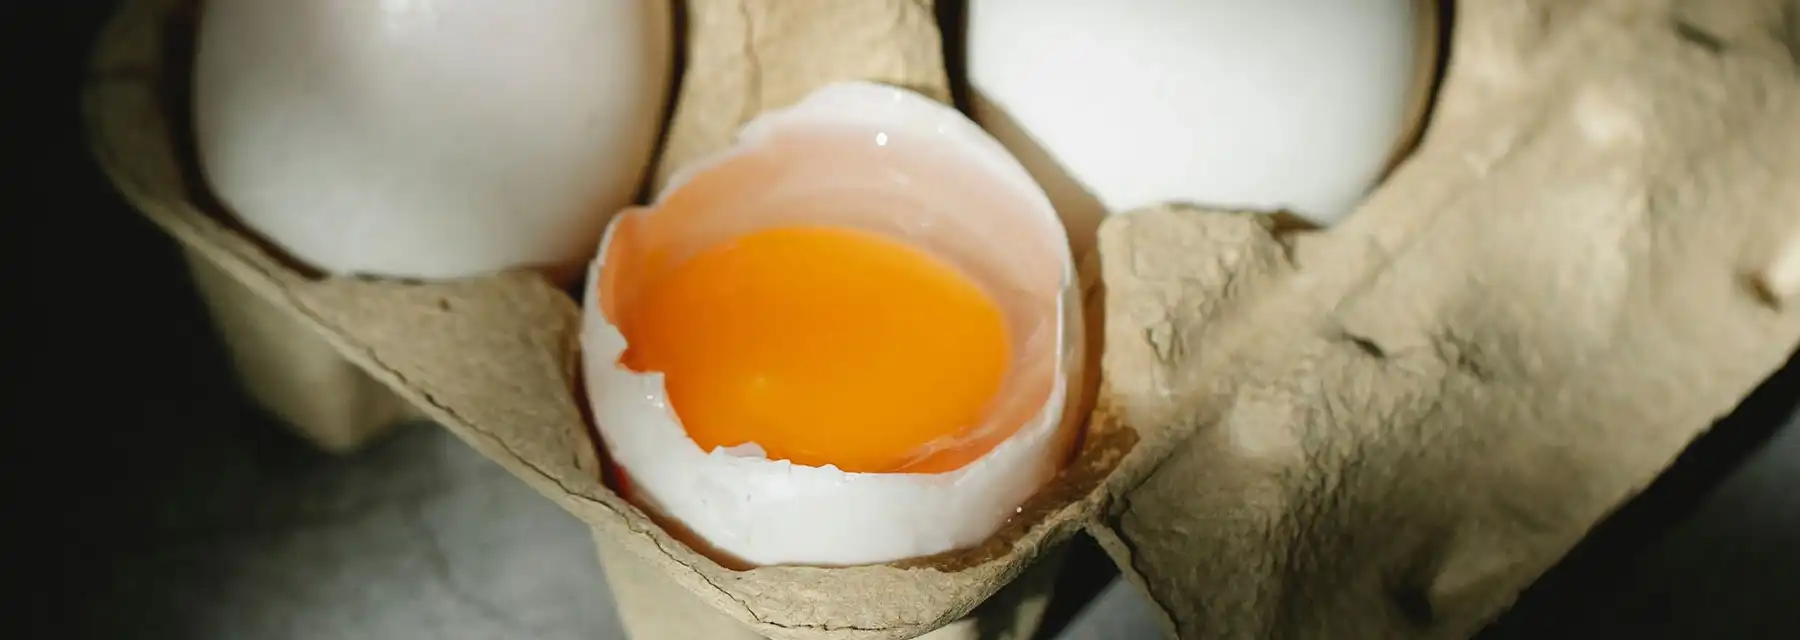 Seguridad alimentaria en los huevos procedentes de gallinas